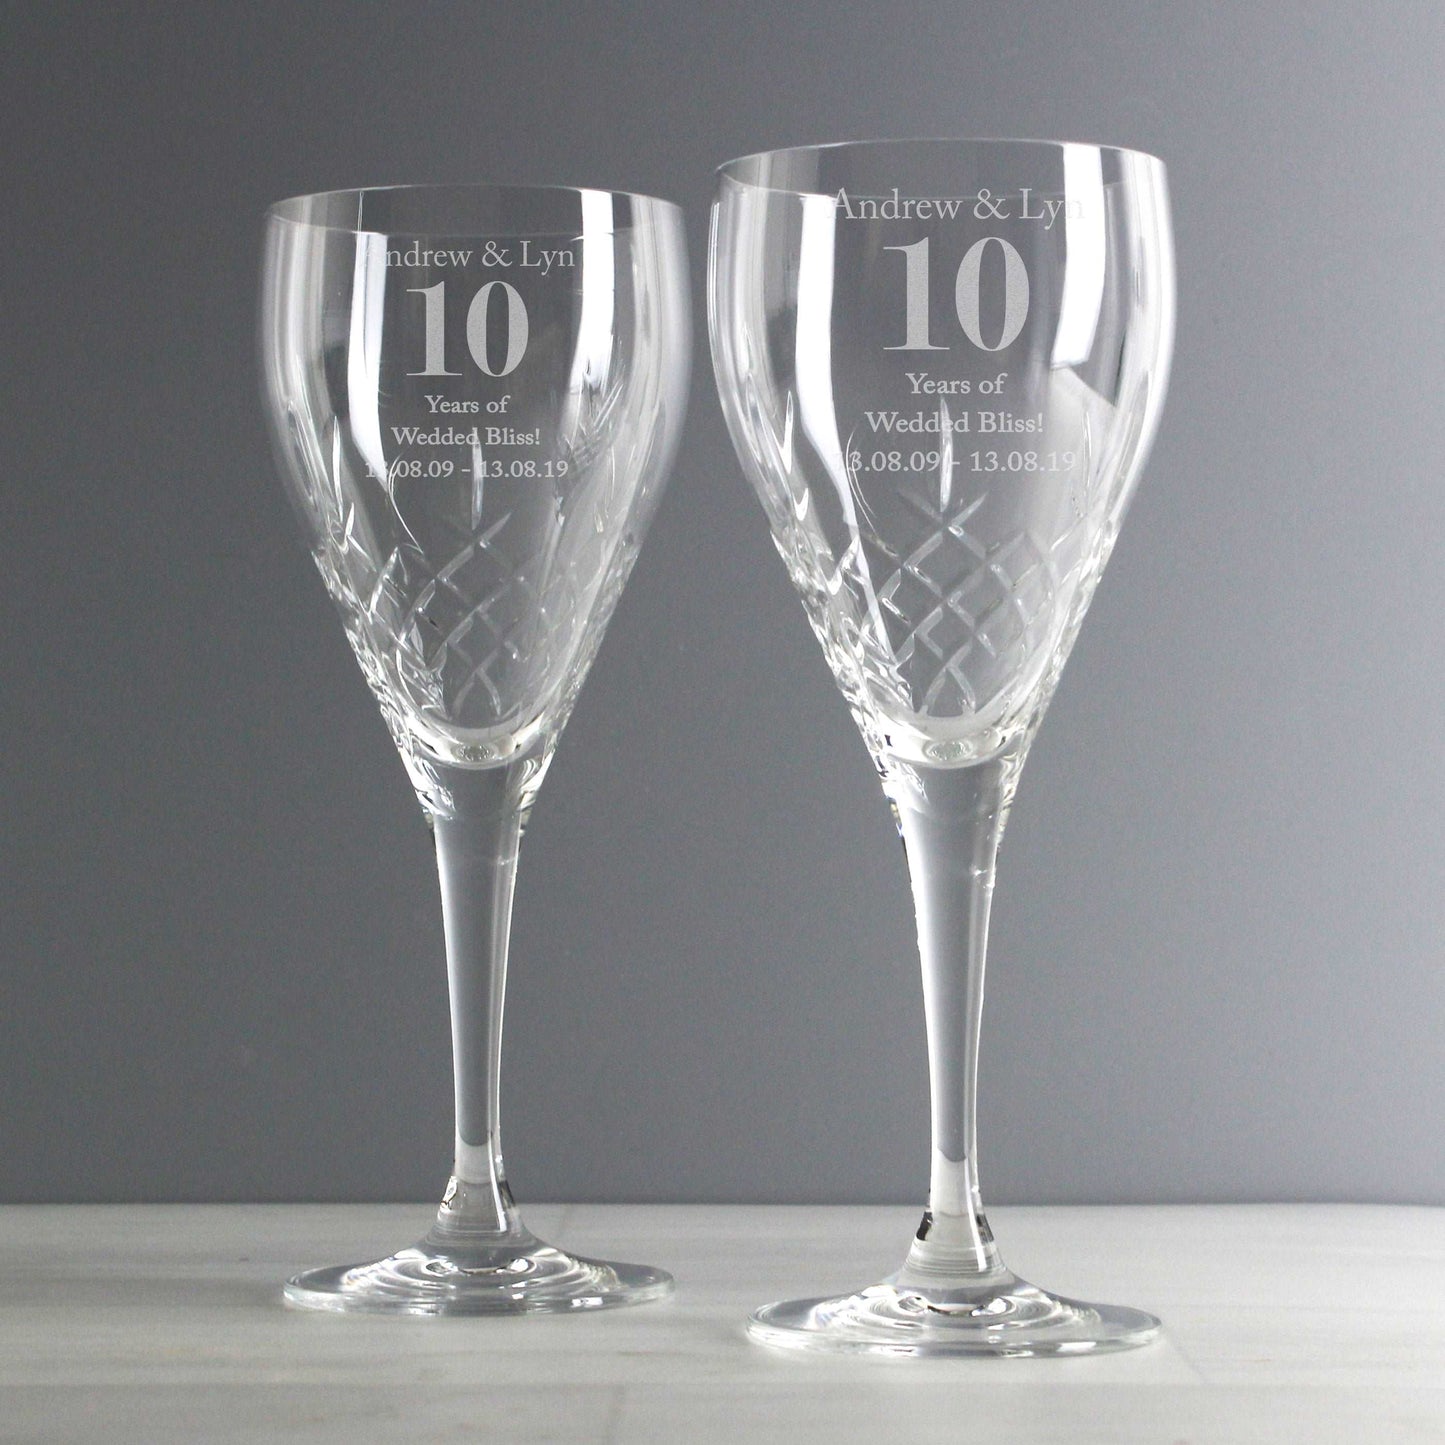 Pair of personalised Crystal wine glasses